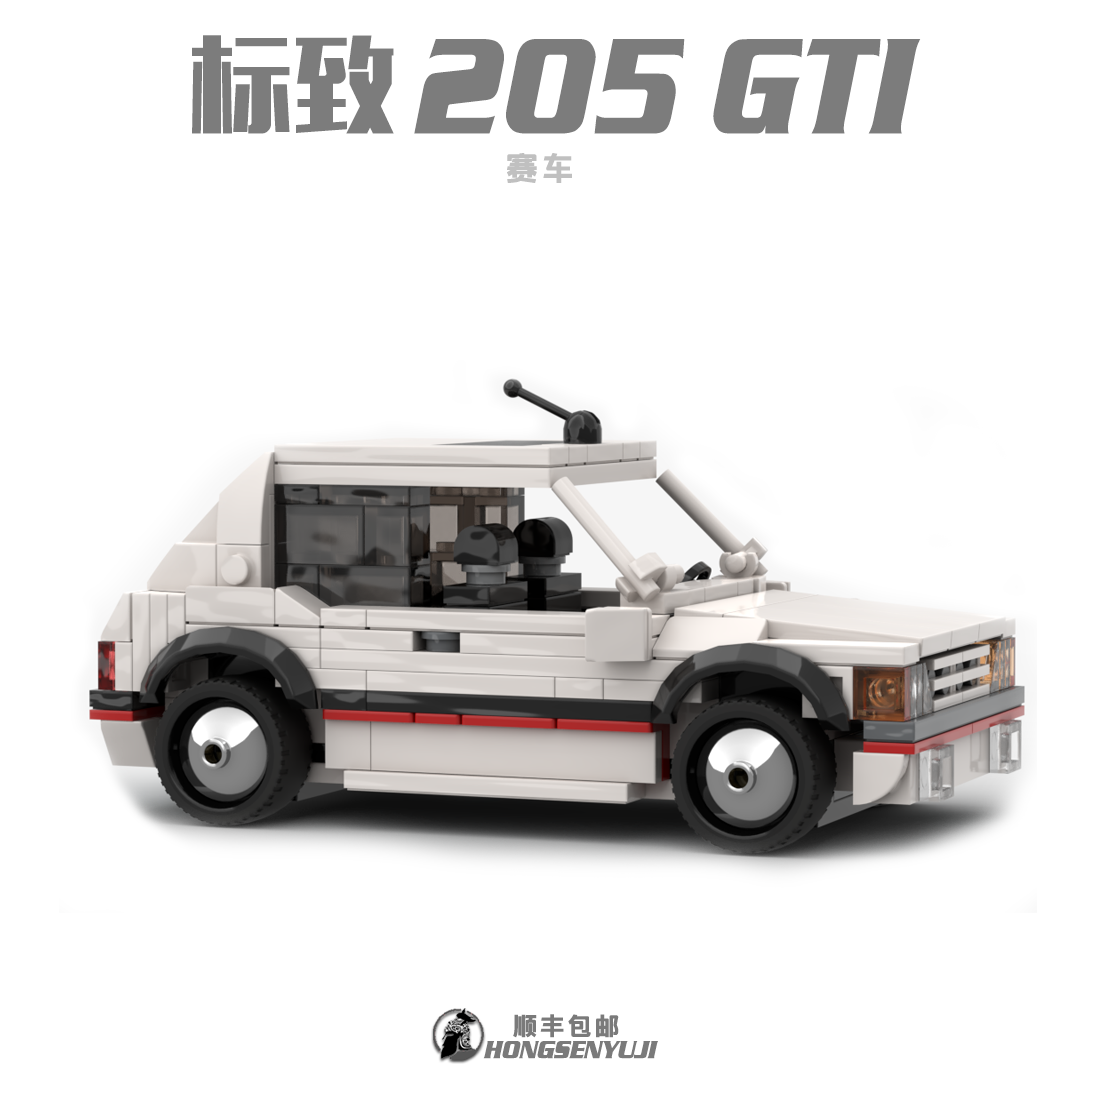 中国积木moc高难度成人儿童积木拼装speed8格标致205GTI 赛车